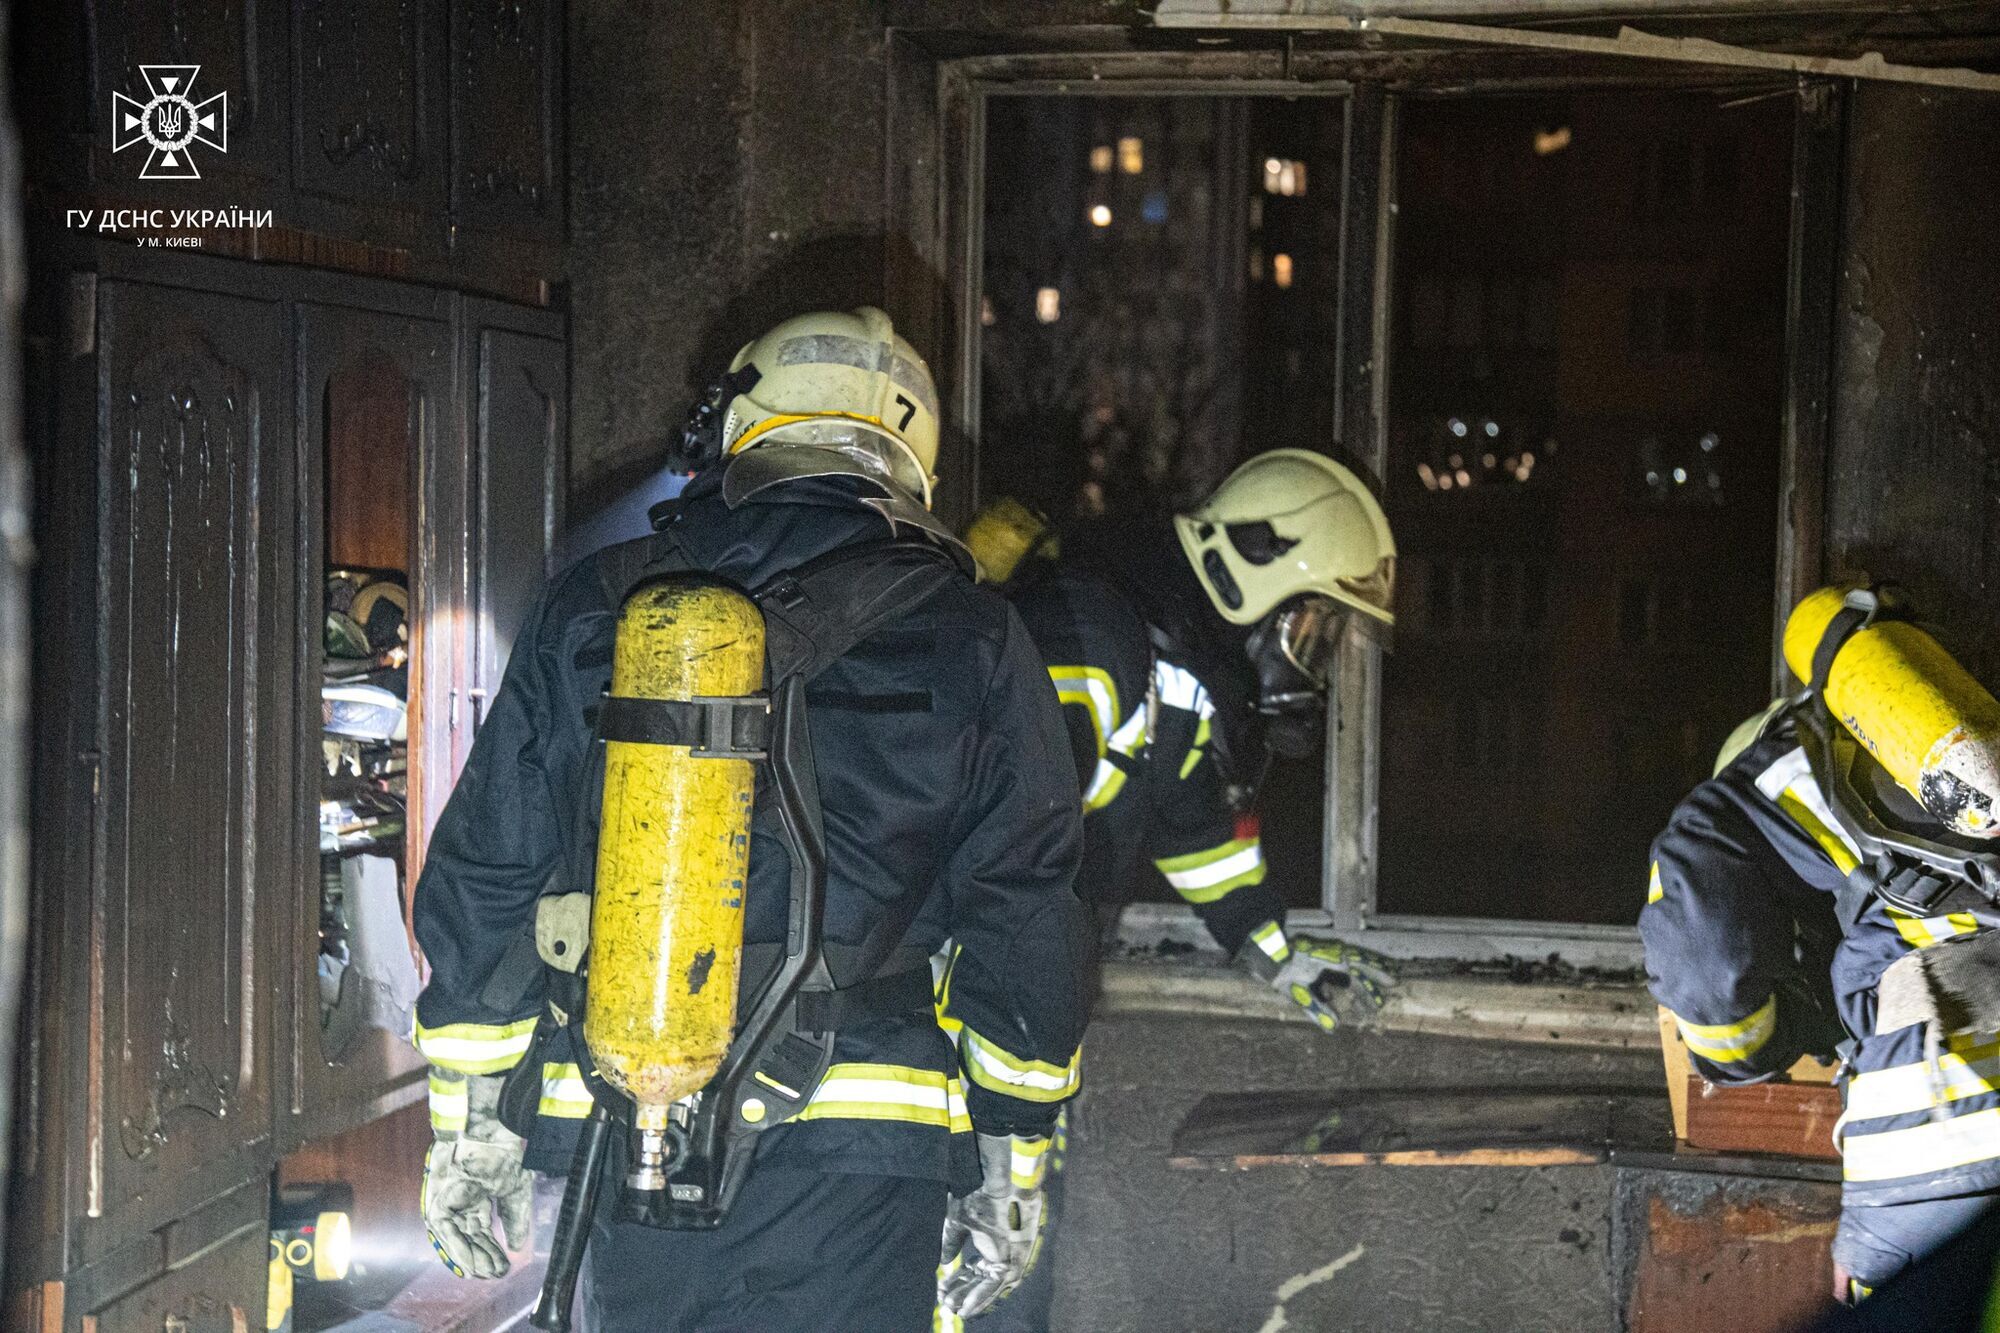 В Киеве бойцы ГСЧС во время тушения пожара спасли женщину. Фото и видео